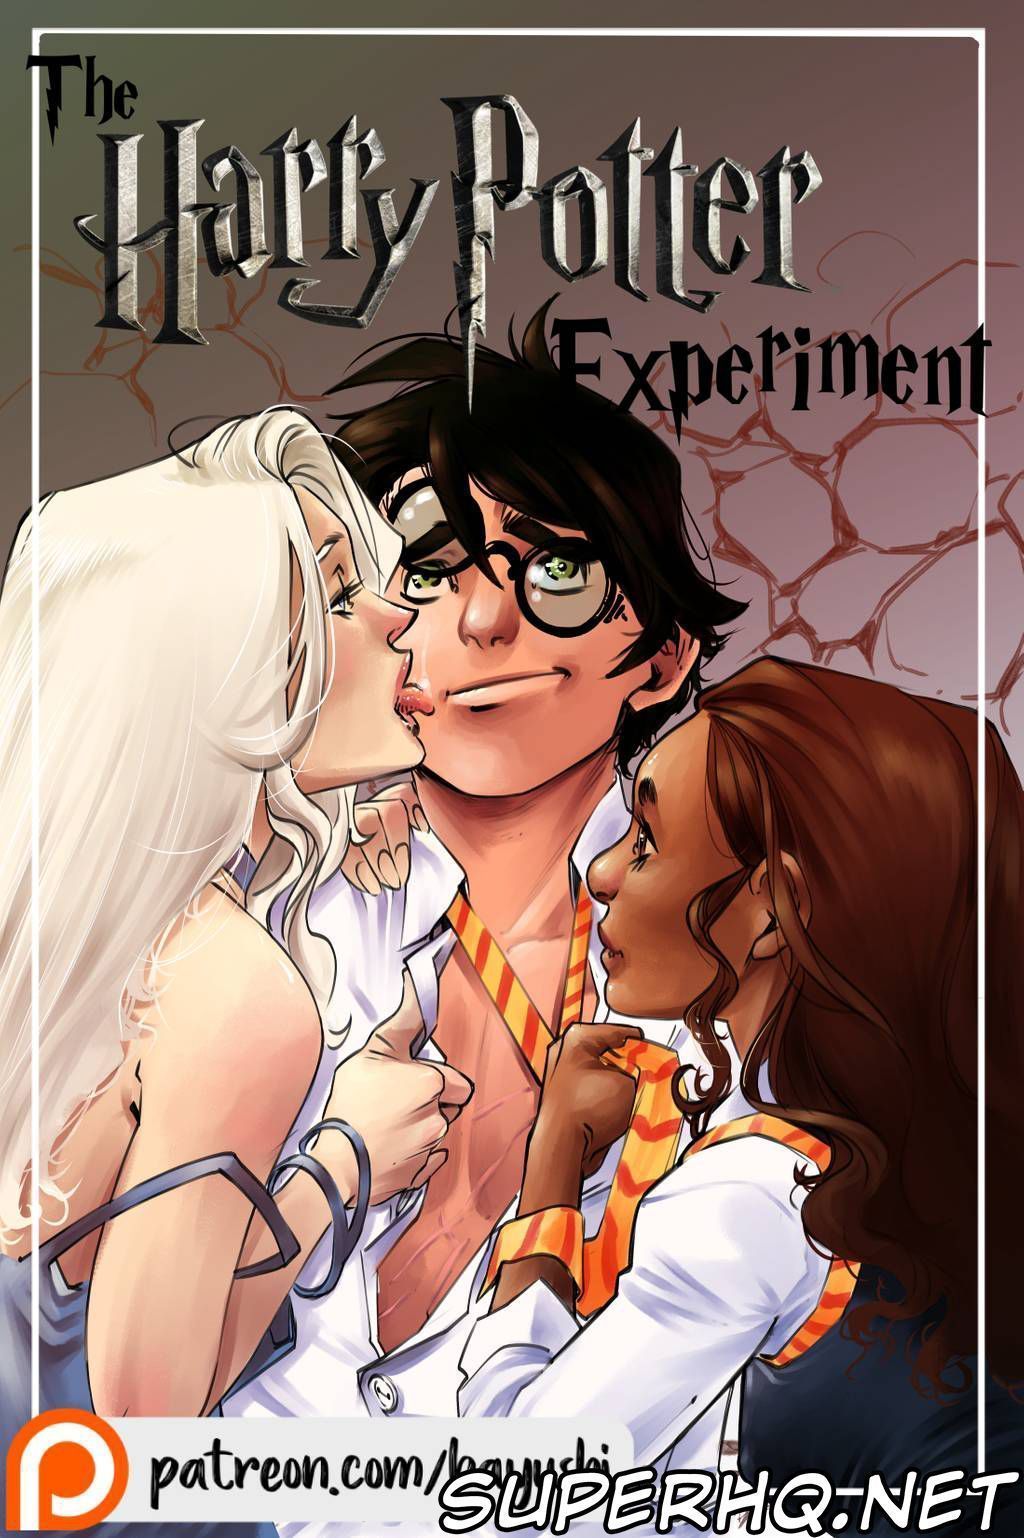 A experiência sexual de Harry Potter